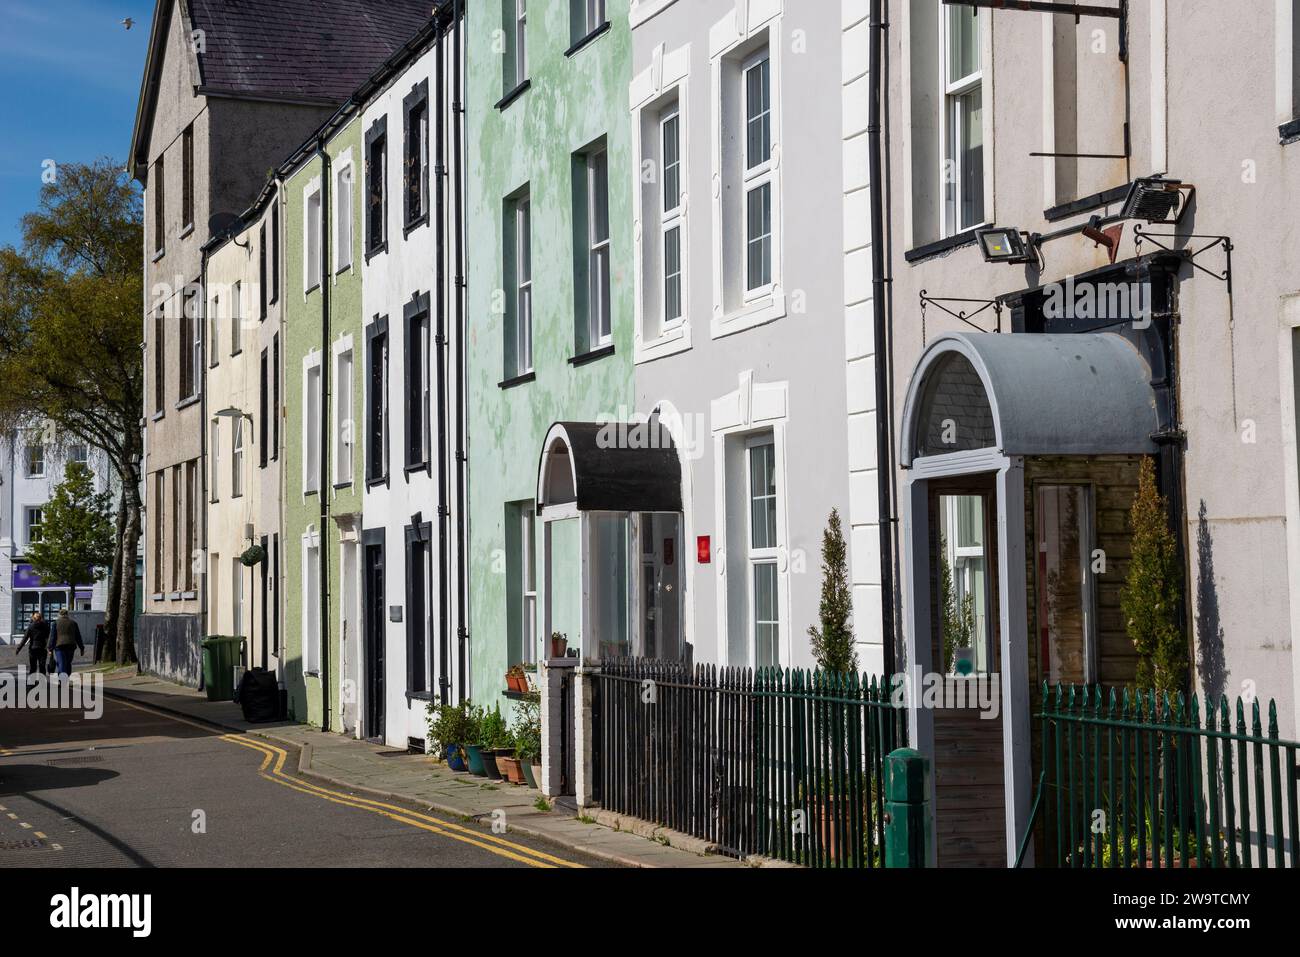 Eine Reihe von Häusern in der Nähe des Hafens in der historischen Stadt Caernarfon, Gwynedd, Nordwales. Stockfoto